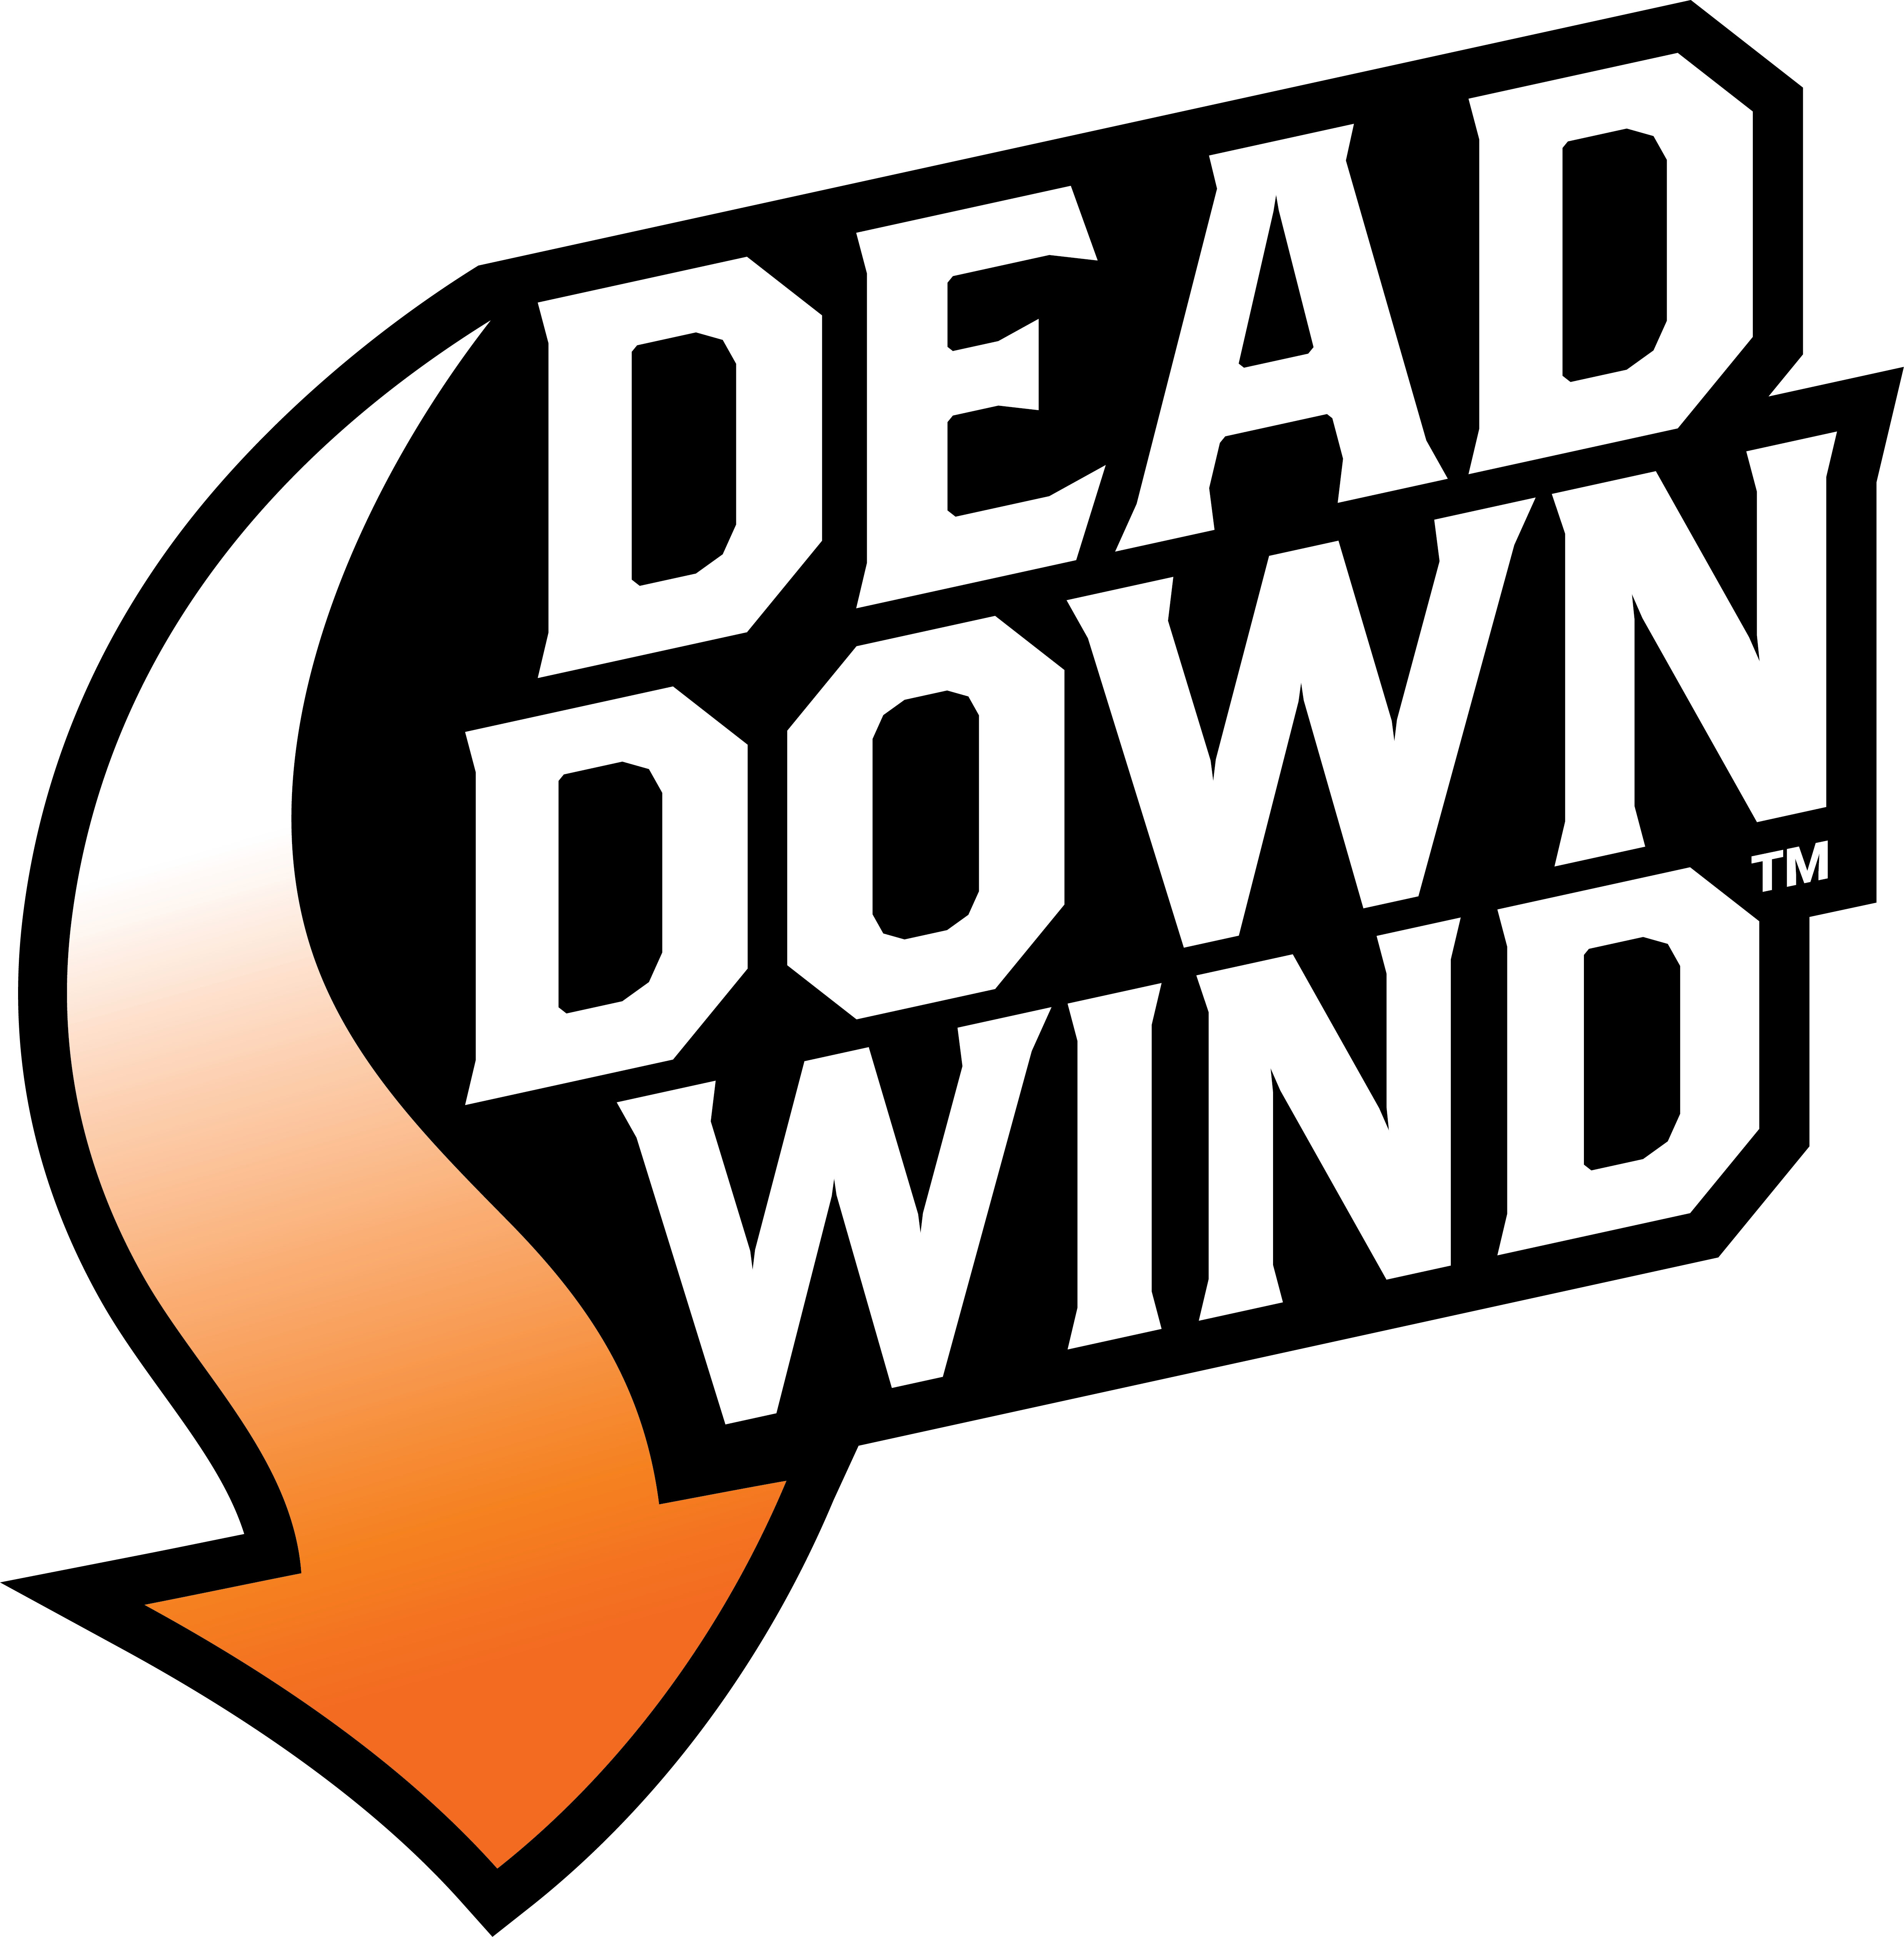 DEAD DOWN WIND